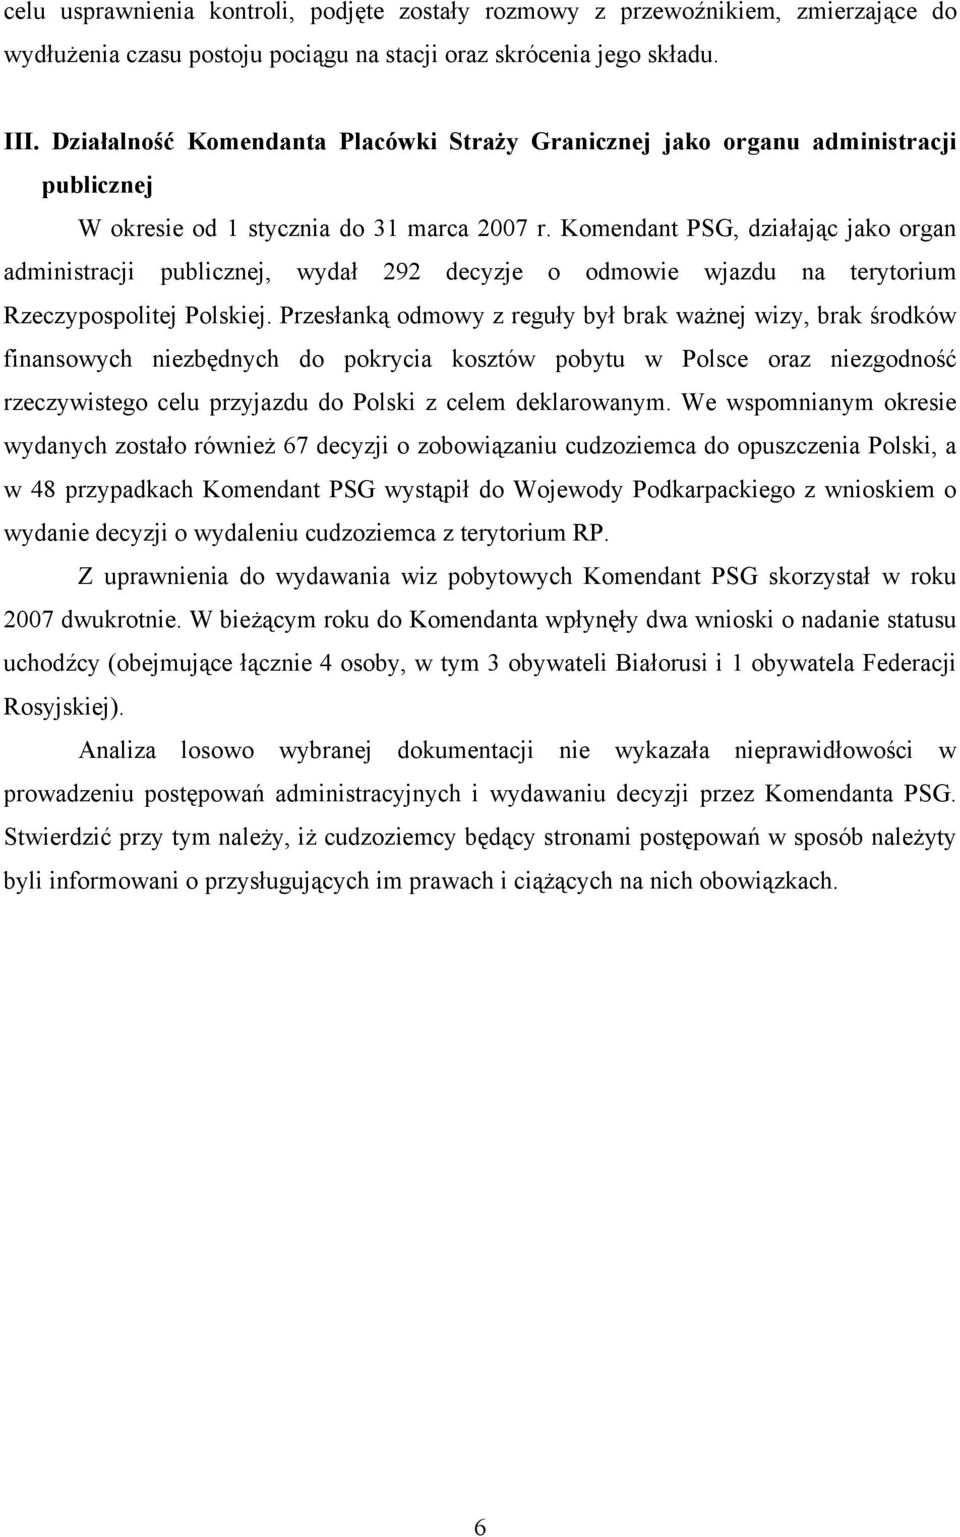 Komendant PSG, działając jako organ administracji publicznej, wydał 292 decyzje o odmowie wjazdu na terytorium Rzeczypospolitej Polskiej.